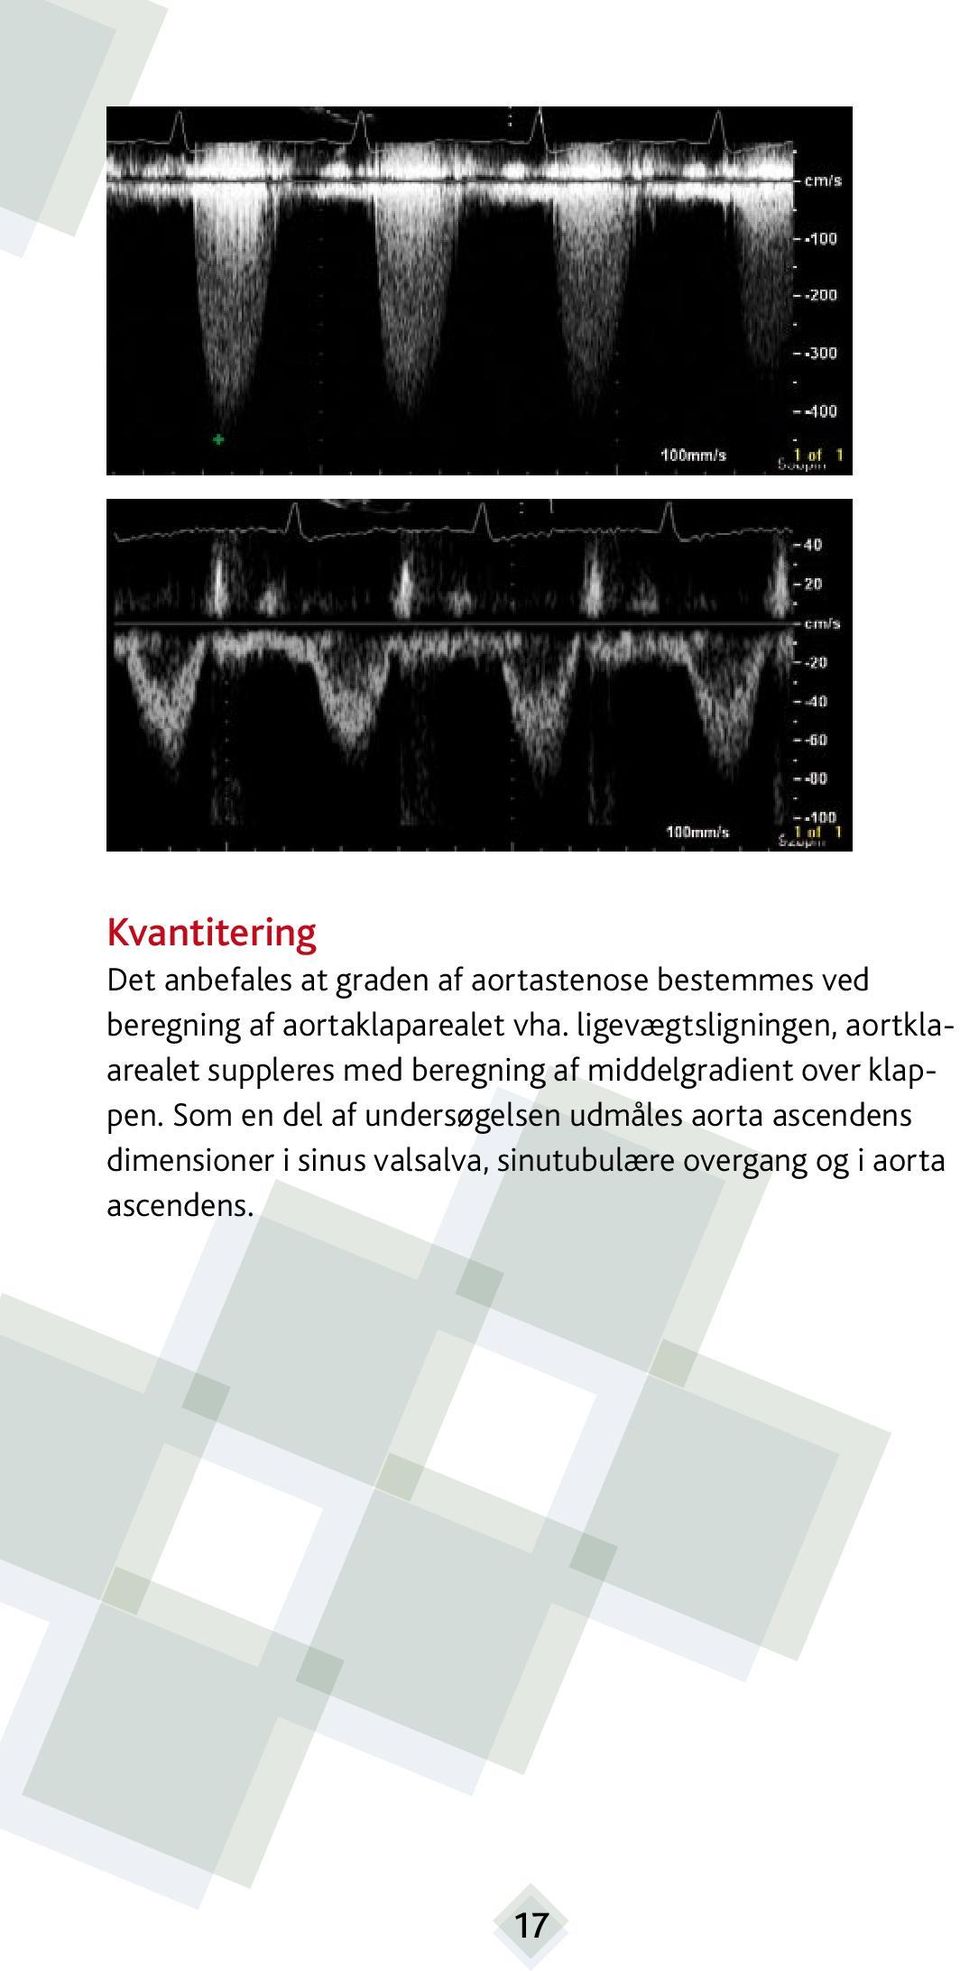 ligevægtsligningen, aortklaarealet suppleres med beregning af middelgradient